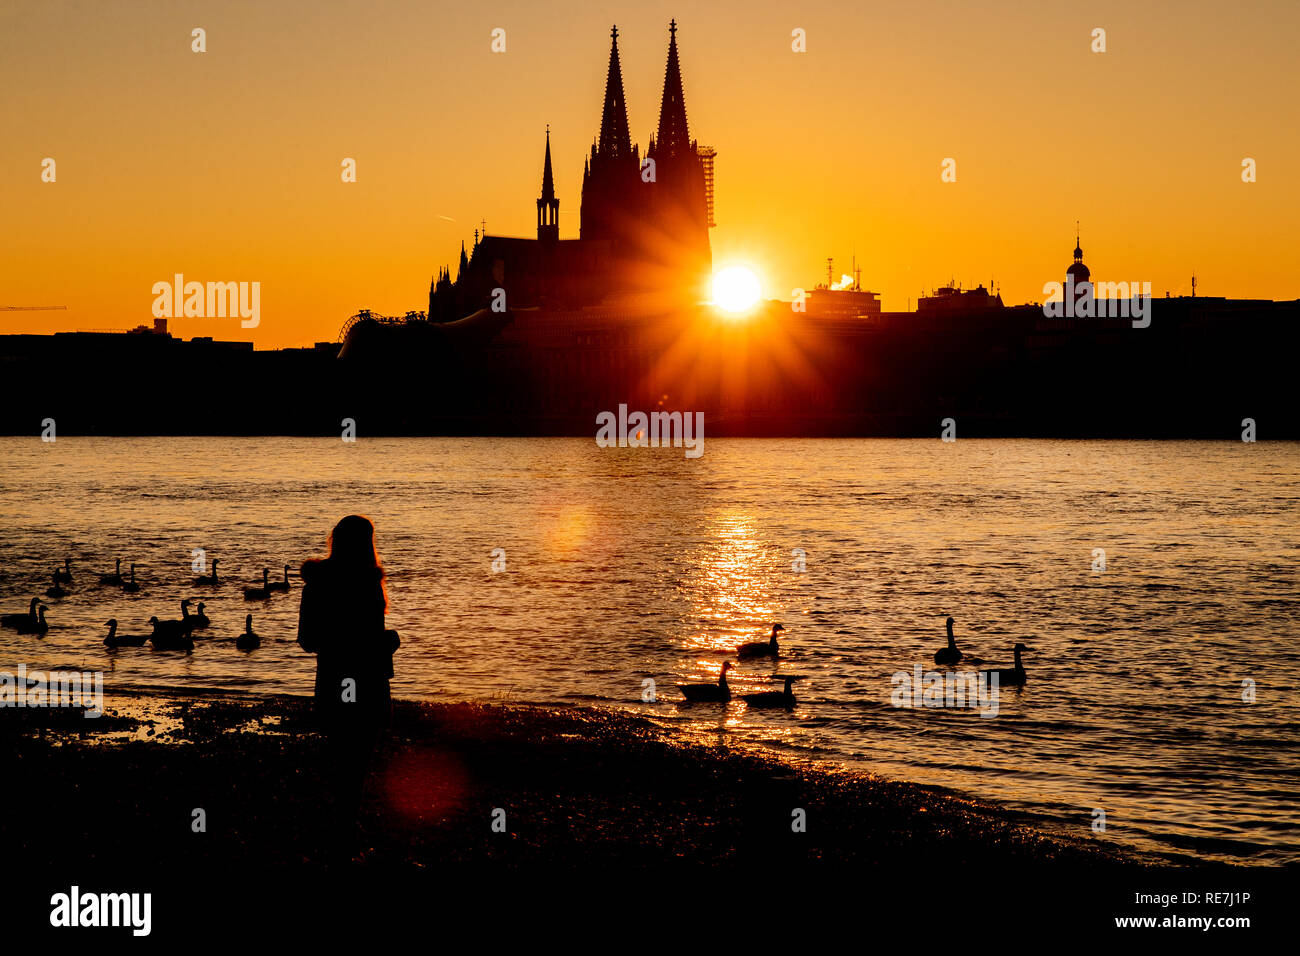 Eine Frau steht bei Sonnenuntergang am Ufer des Rheins. Im Hintergrund zeichnet sich der Kölner Dom ab. Foto Stock